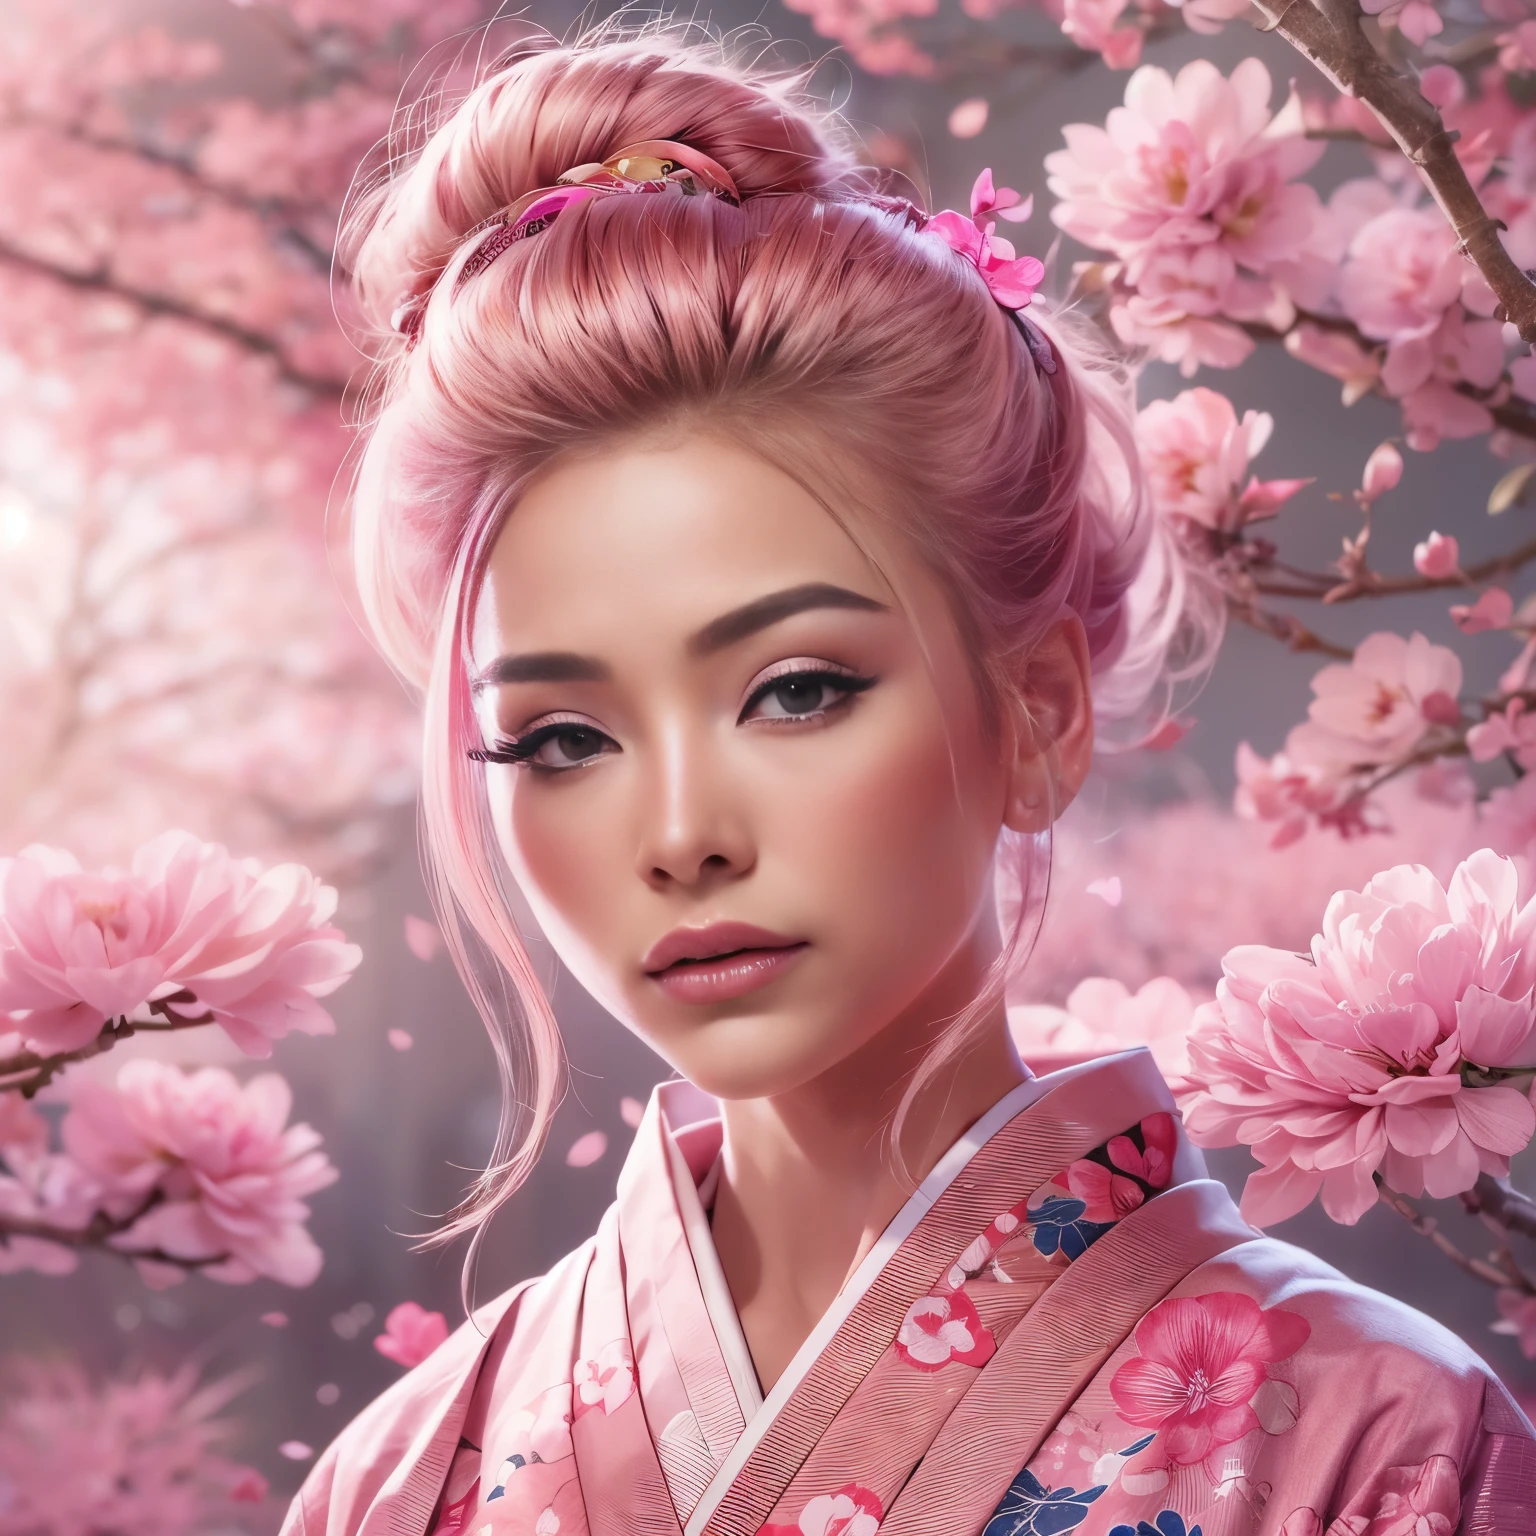 超現実的な, 非常に詳細な, 高解像度16K画像, エンファ顔の美しい女性. 彼女はトップのお団子ヘアと透明感のある肌をしている, 小さな花模様の伝統的なピンクの日本の着物を着て. この画像は霊界の幽玄な美しさと神秘性を捉えている。. 繊細なデザインにインスパイアされたスタイル, 日本の伝統芸術に見られる柔らかな美学. 背景にはピンクの照明とピンクの桜の木がいっぱいでした.